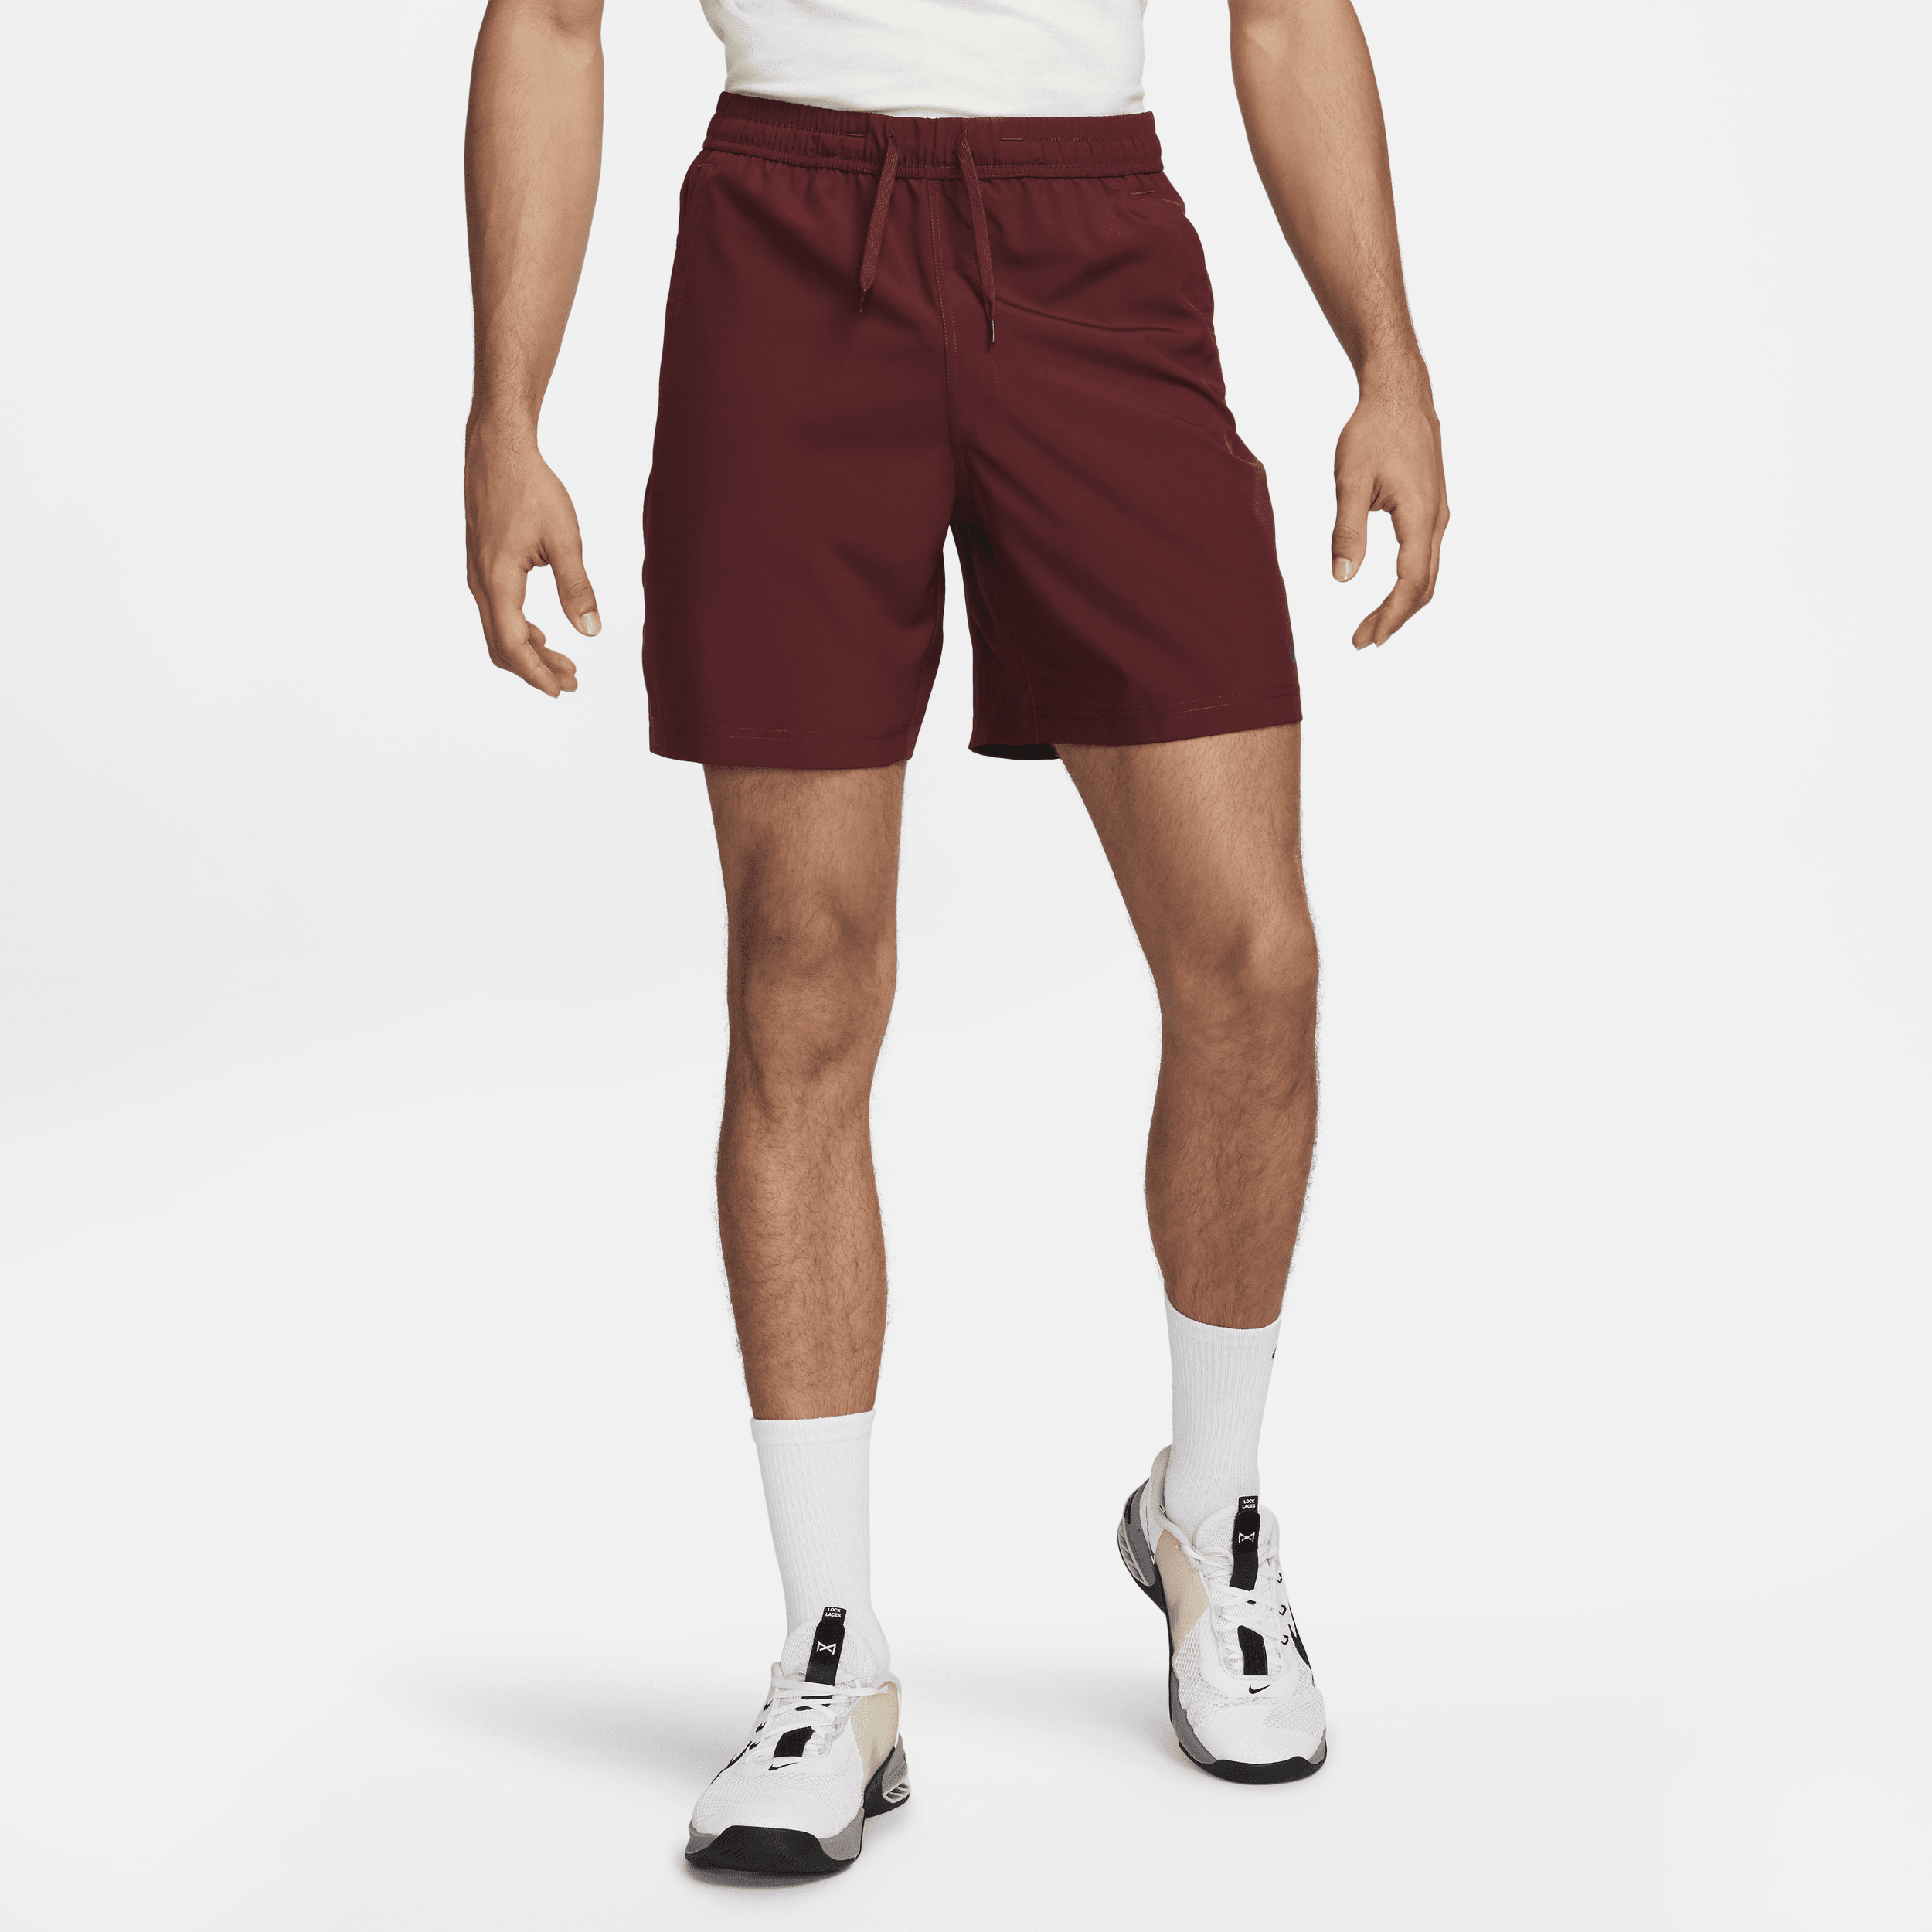 Alsidige Nike Form Dri-FIT-shorts (18 cm) uden for til mænd - rød